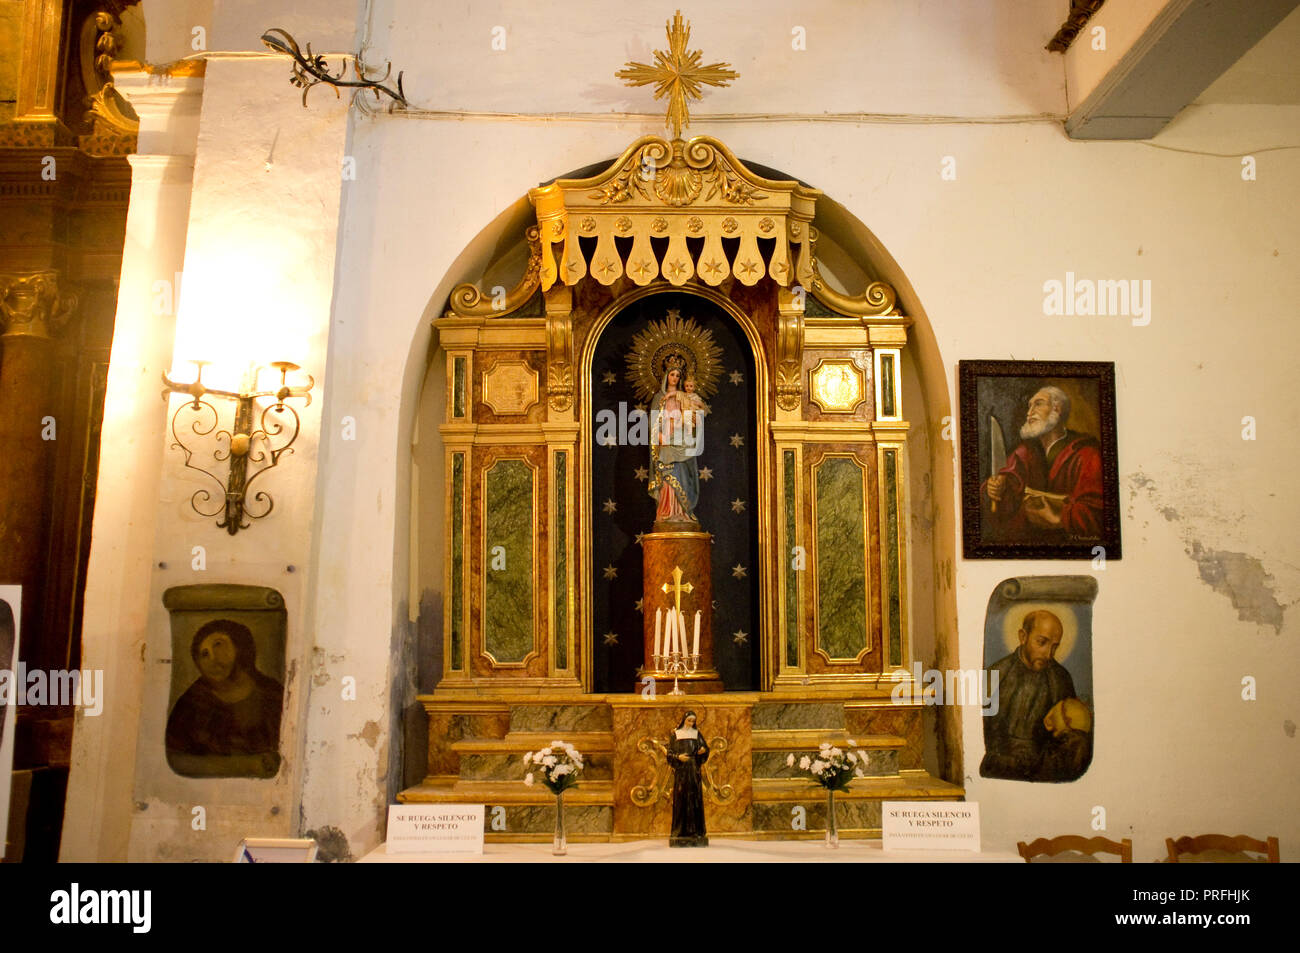 ECCE HOMO, santuario de la iglesia de la misericordia en BORJA, Aragón, España, originalmente pintados por Elias Garcia Martinez y restaurado por Cecilia Gimenez Zueco. Foto de stock